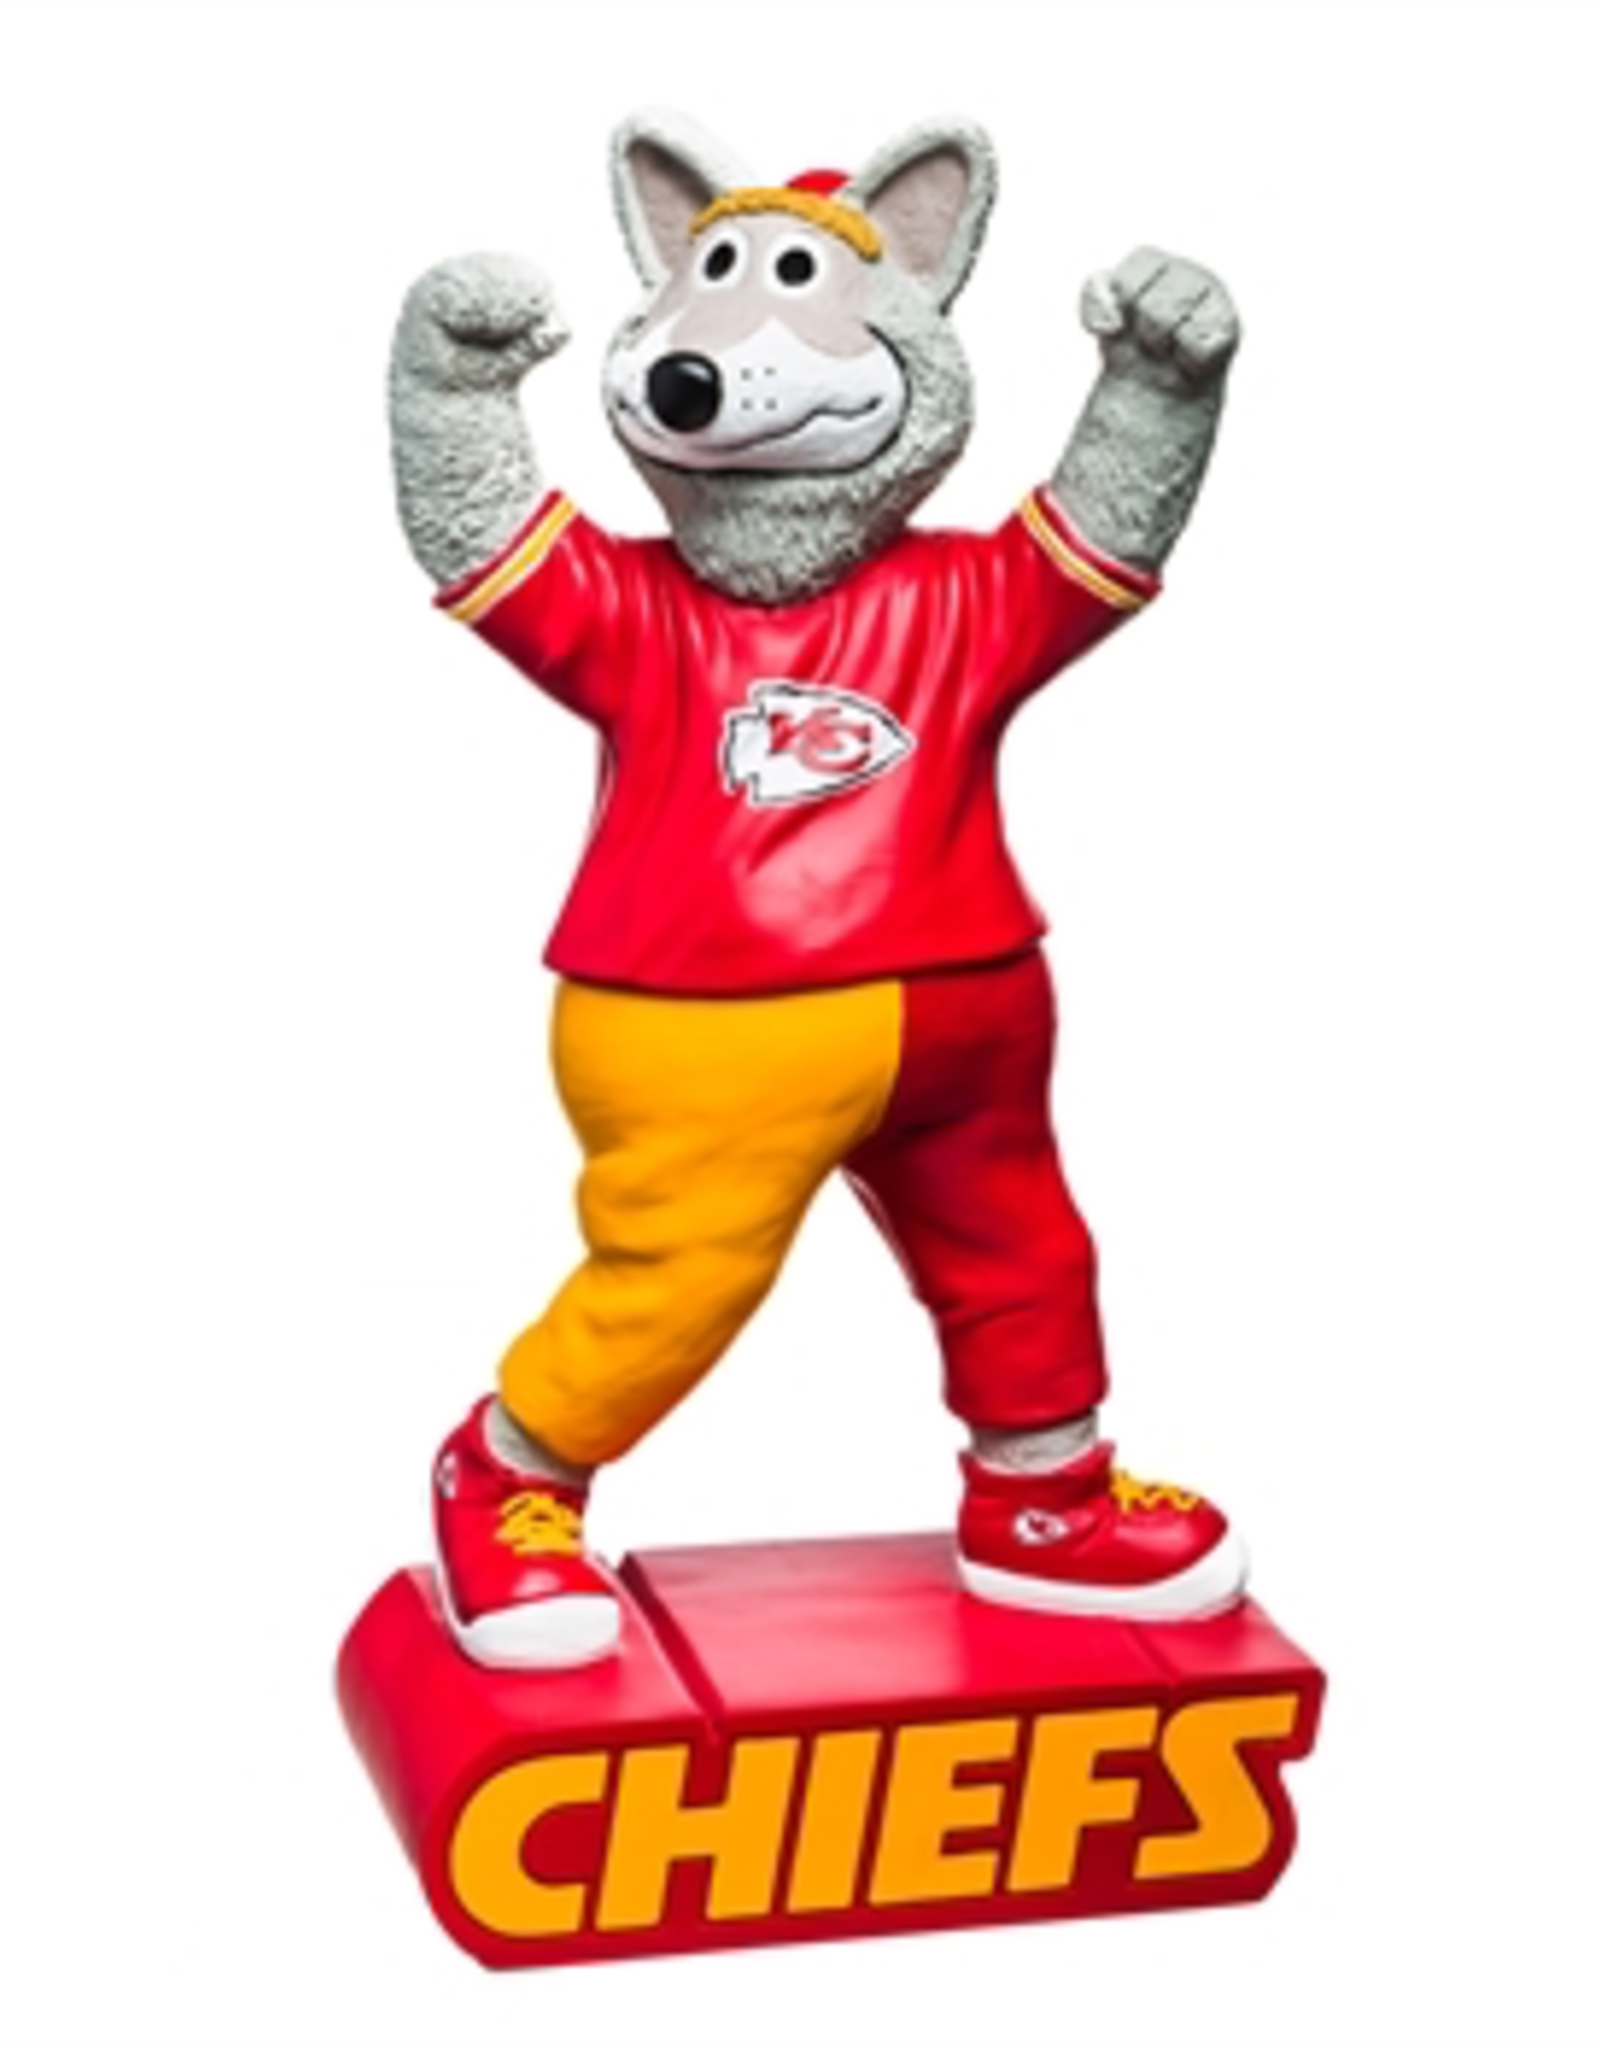 EVERGREEN Kansas City Chiefs Mascot Statue